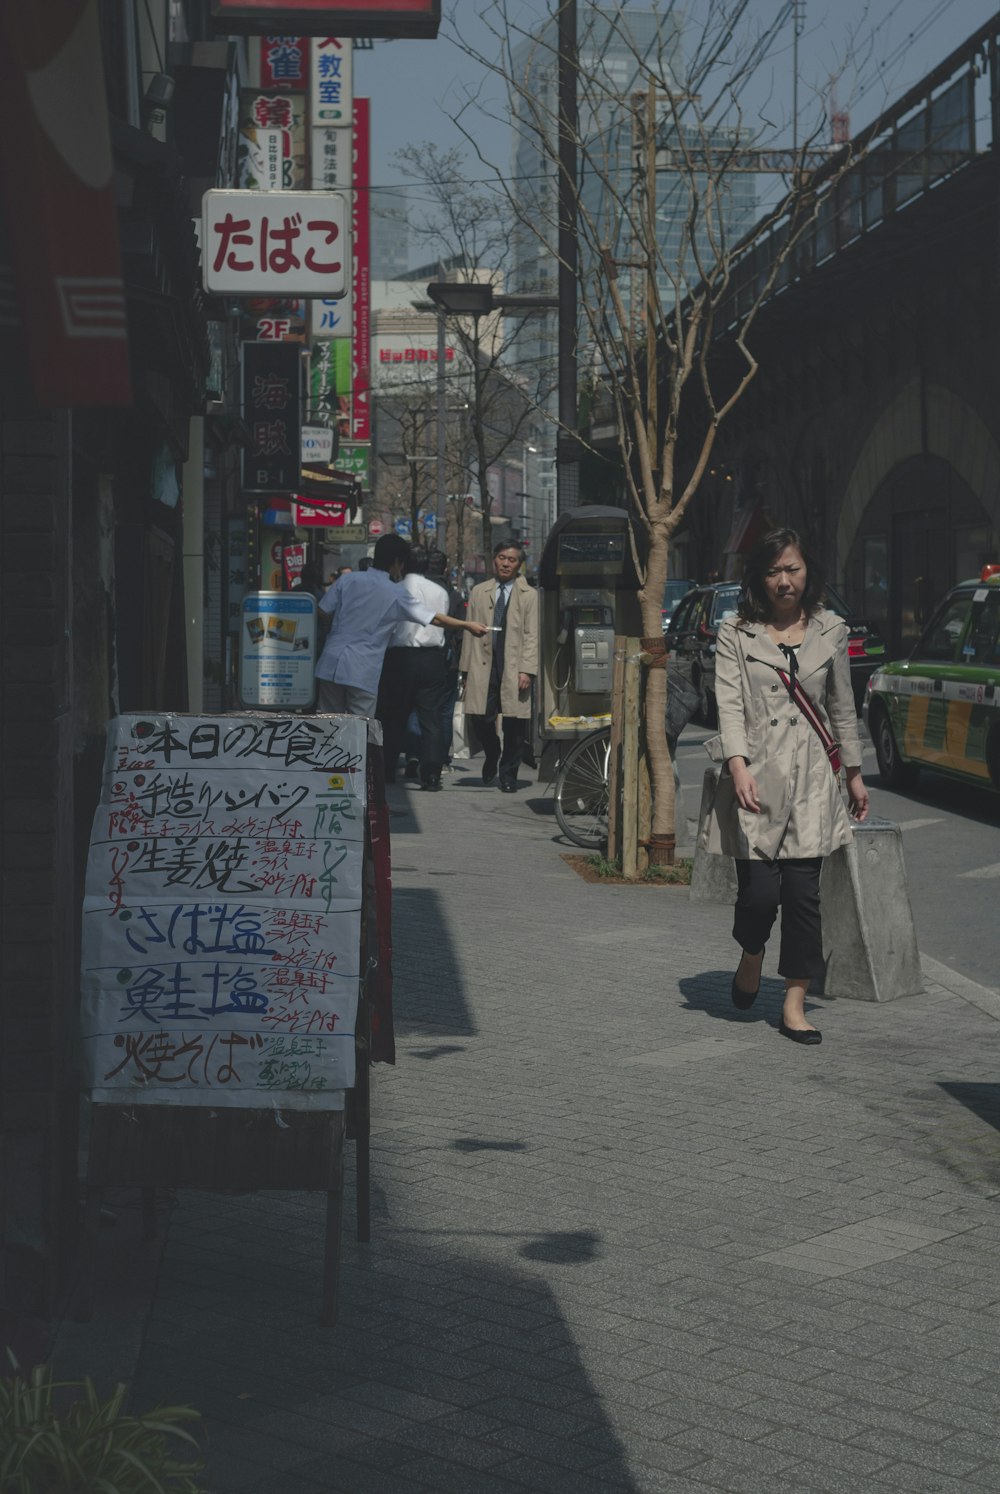 Eine Frau geht eine Straße entlang und hält Einkaufstüten in der Hand